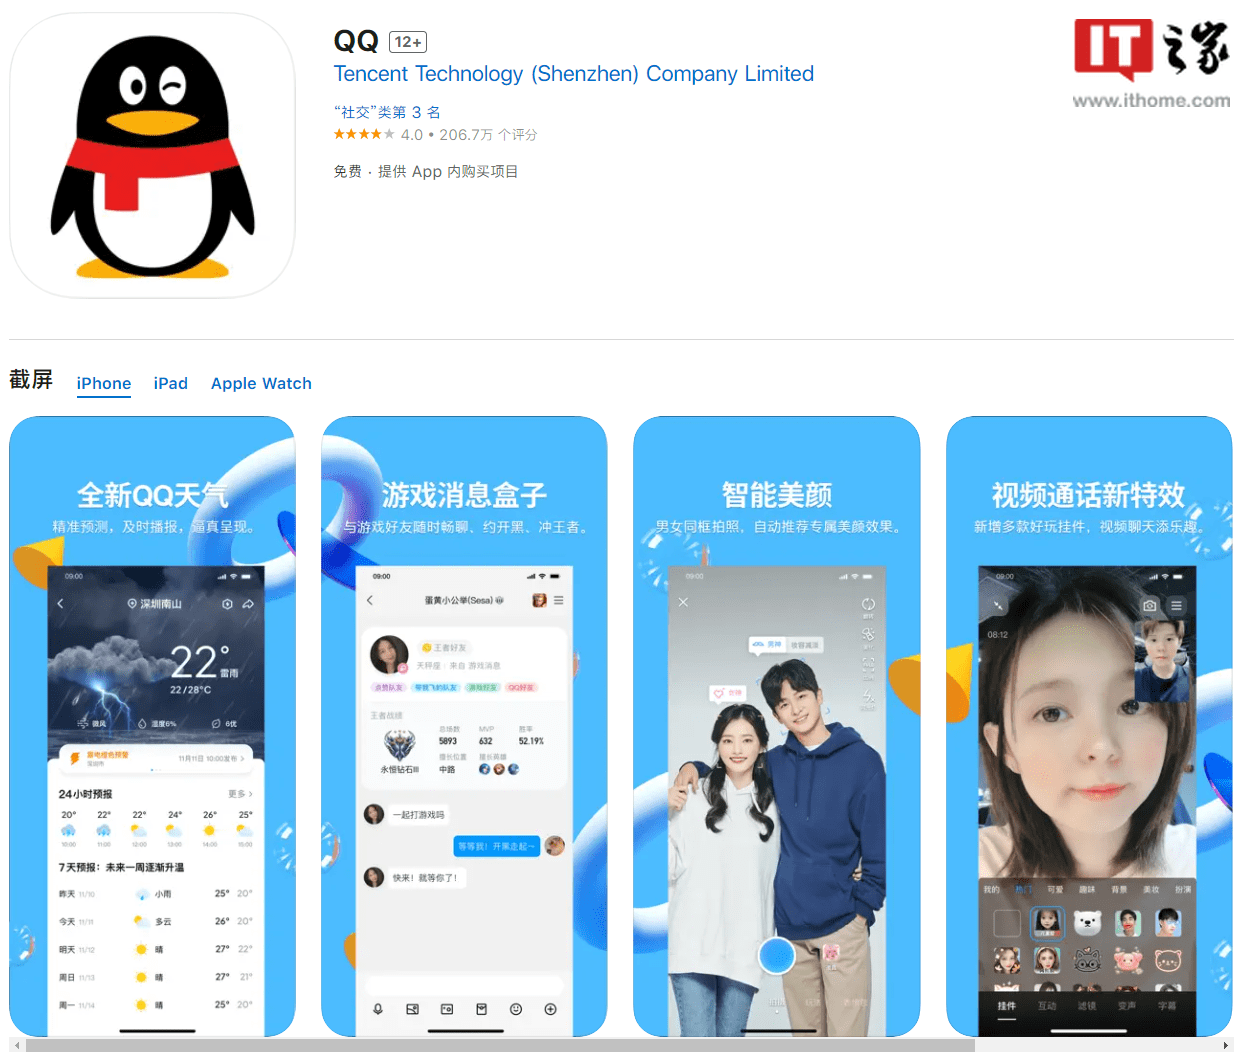 腾讯QQ安卓/iOS版8.9.33正式版发布 支持语音/视频通话设置虚拟形象